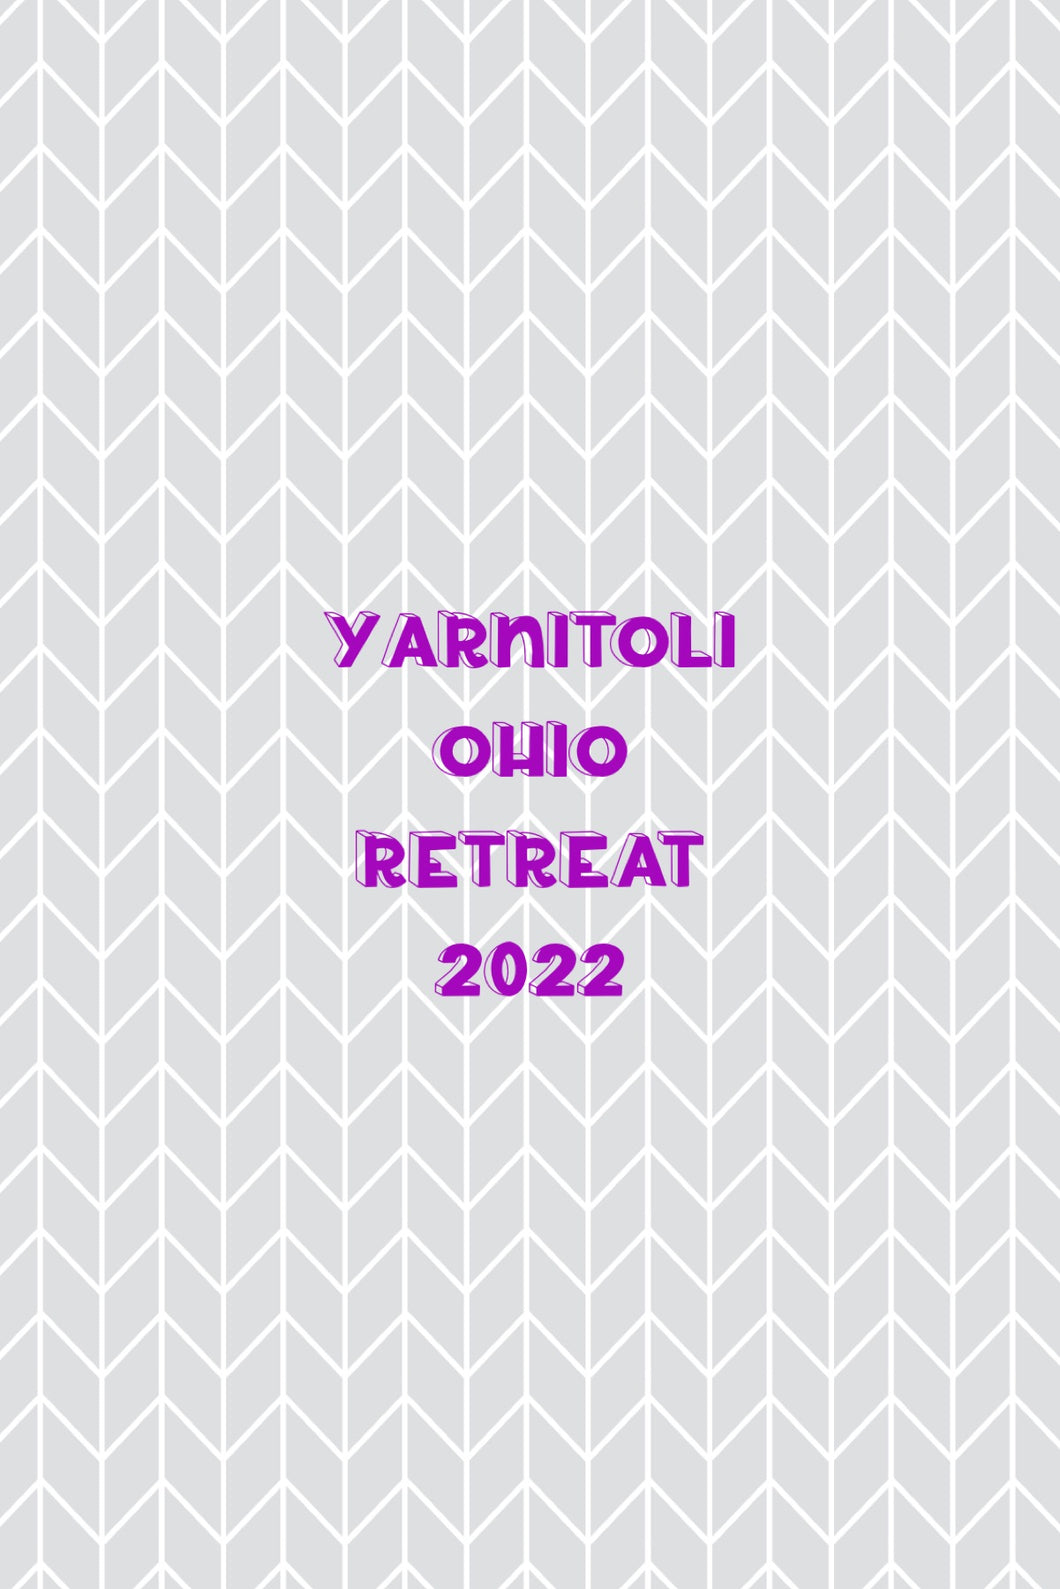 Yarnitoli Ohio Retreat 2022